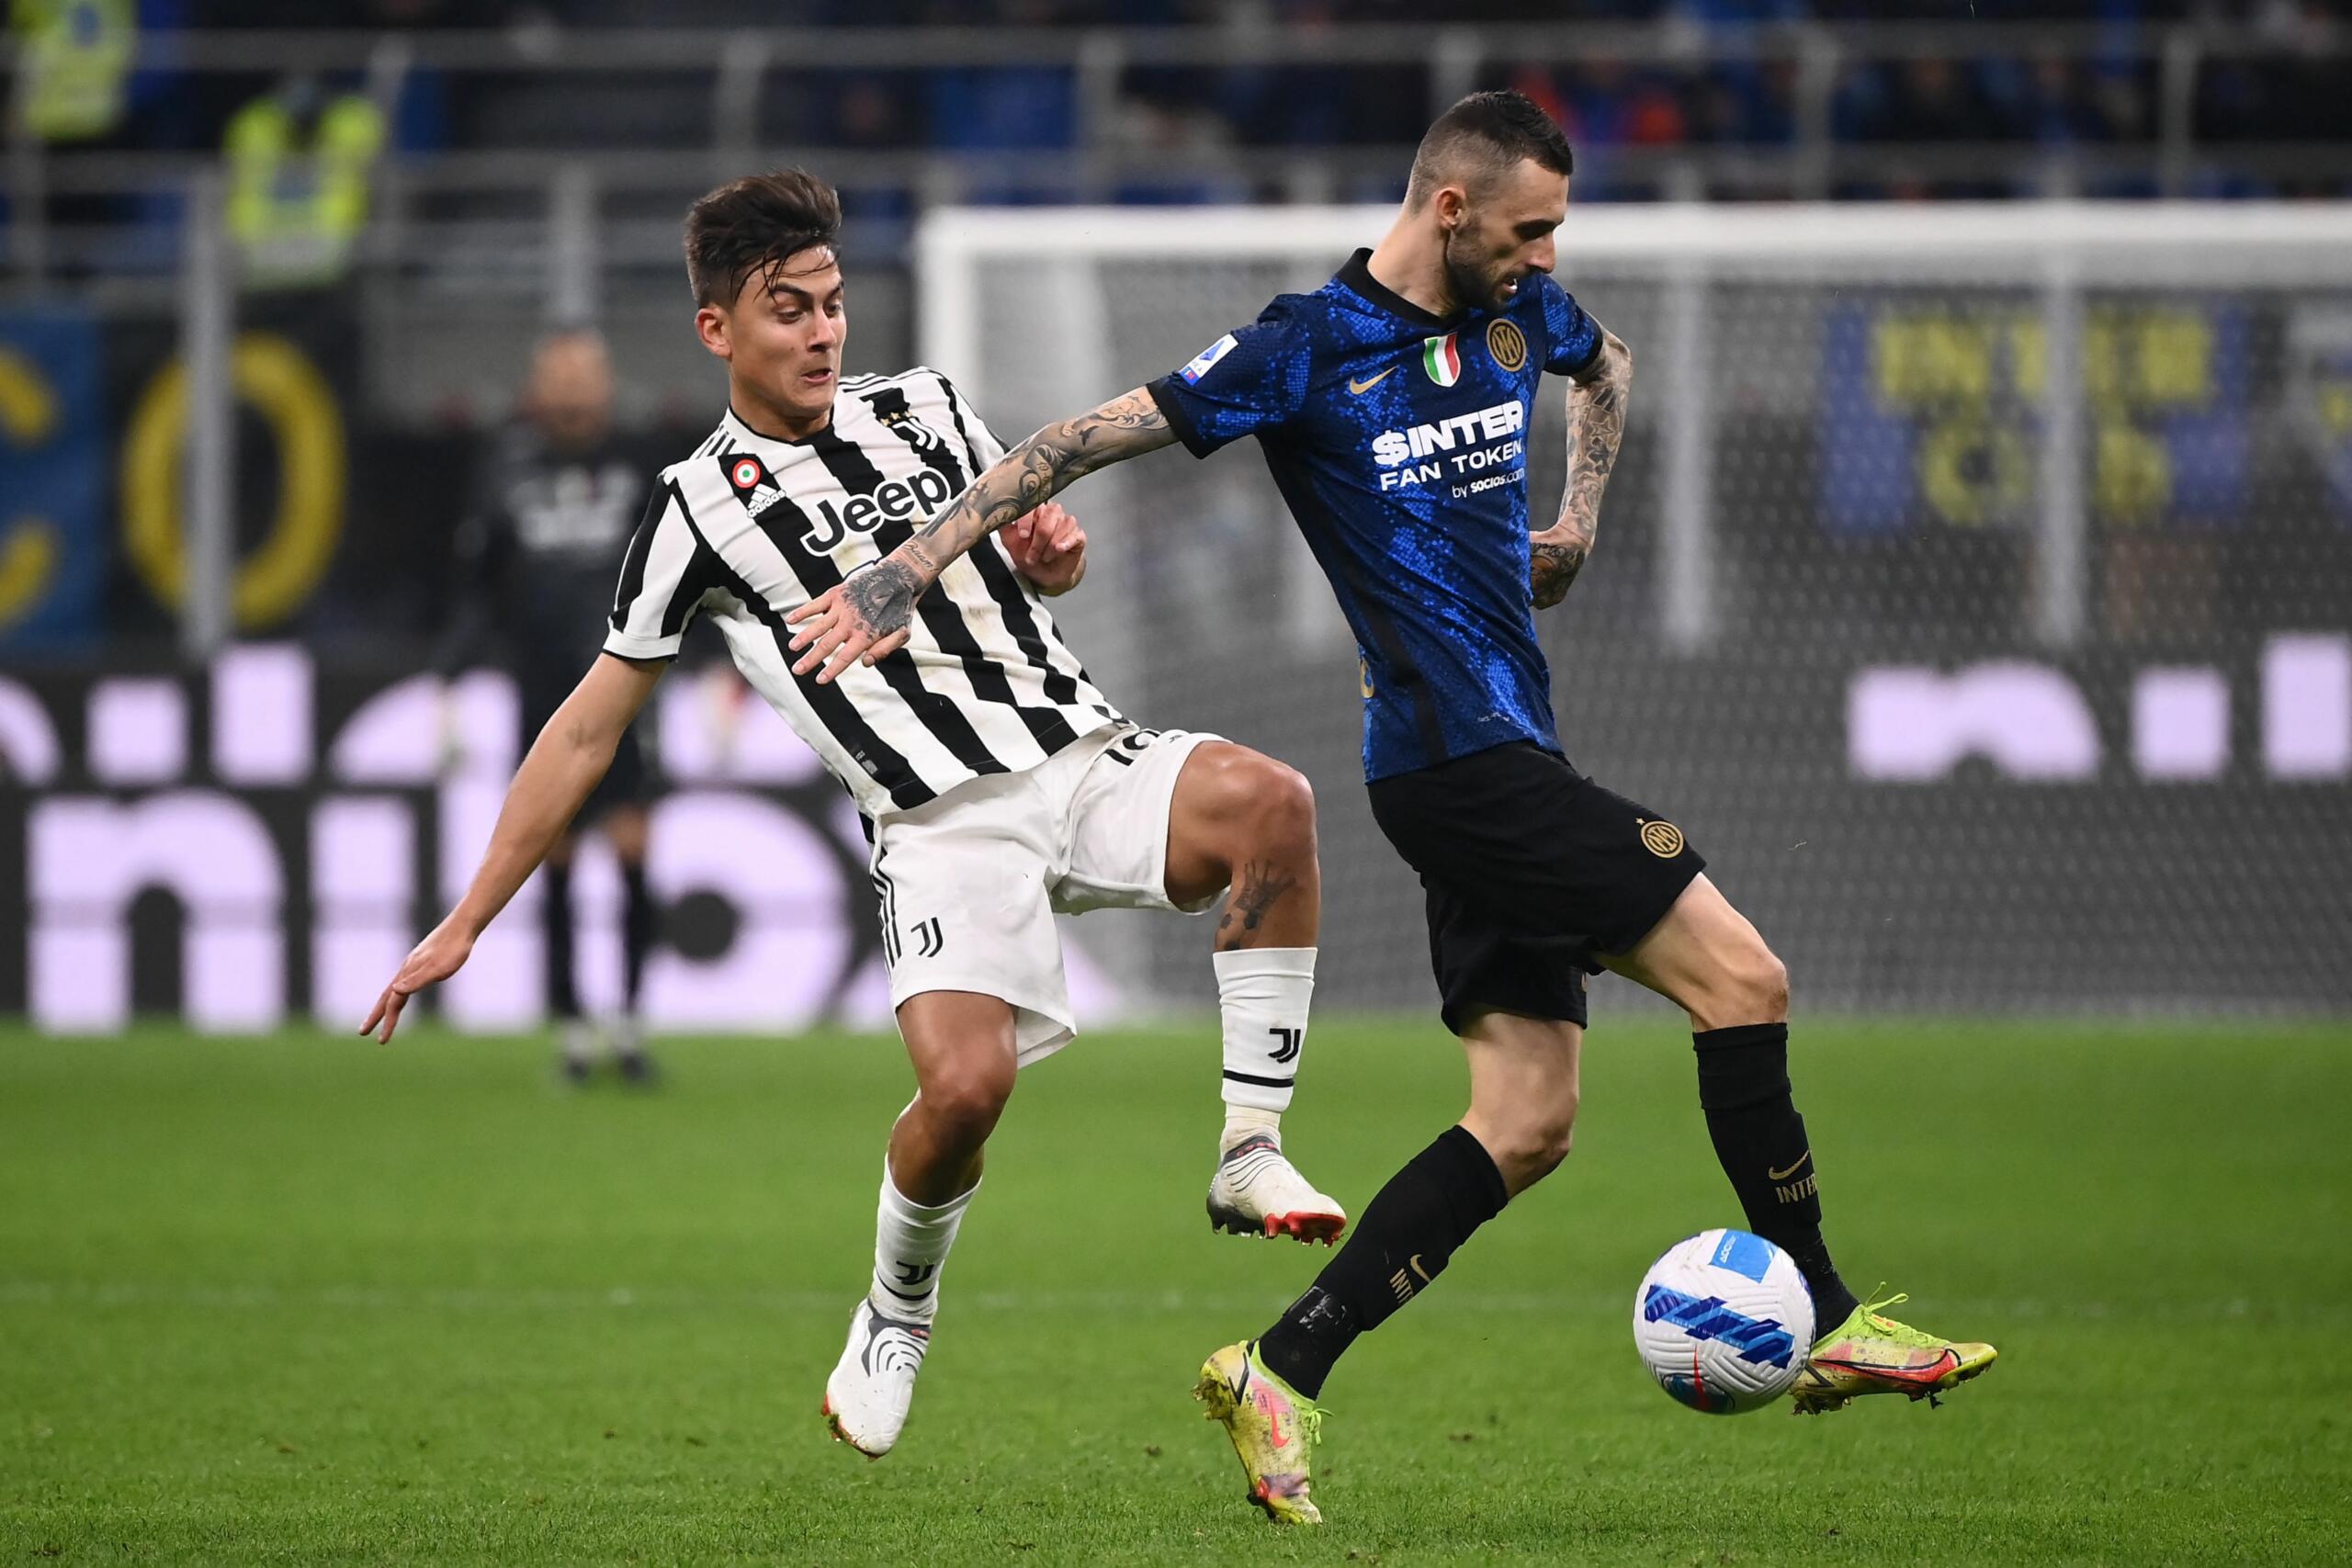 Juventus-Inter formazioni ufficiali